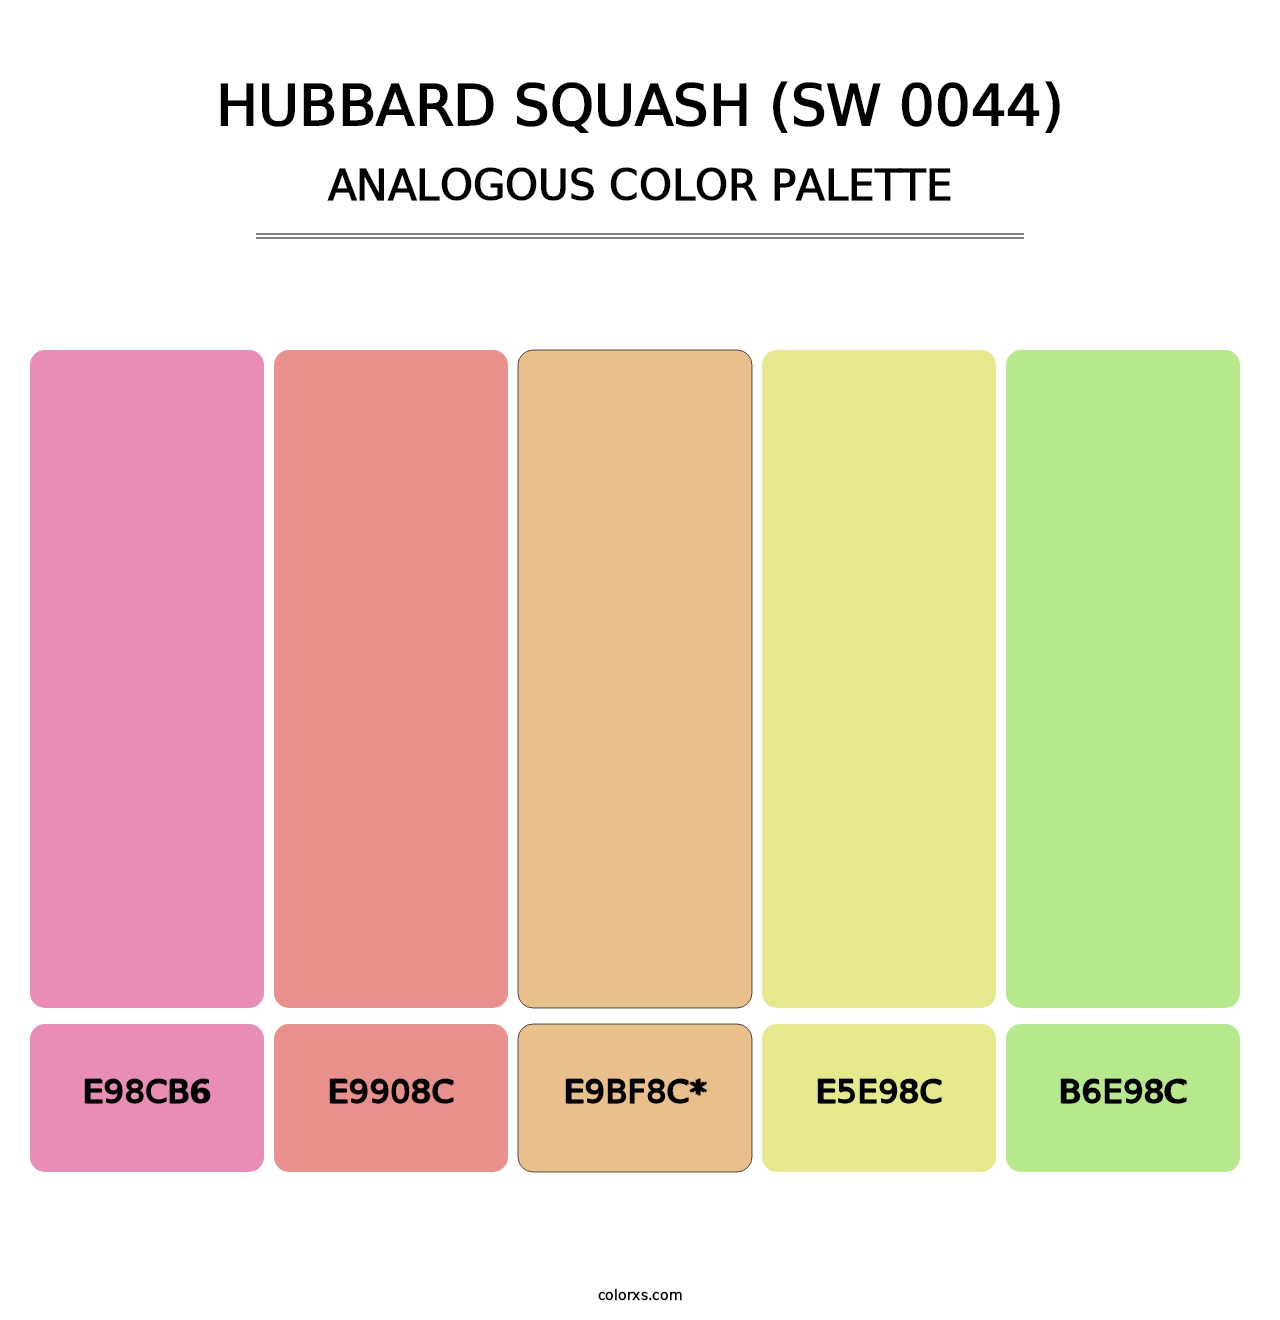 Hubbard Squash (SW 0044) - Analogous Color Palette